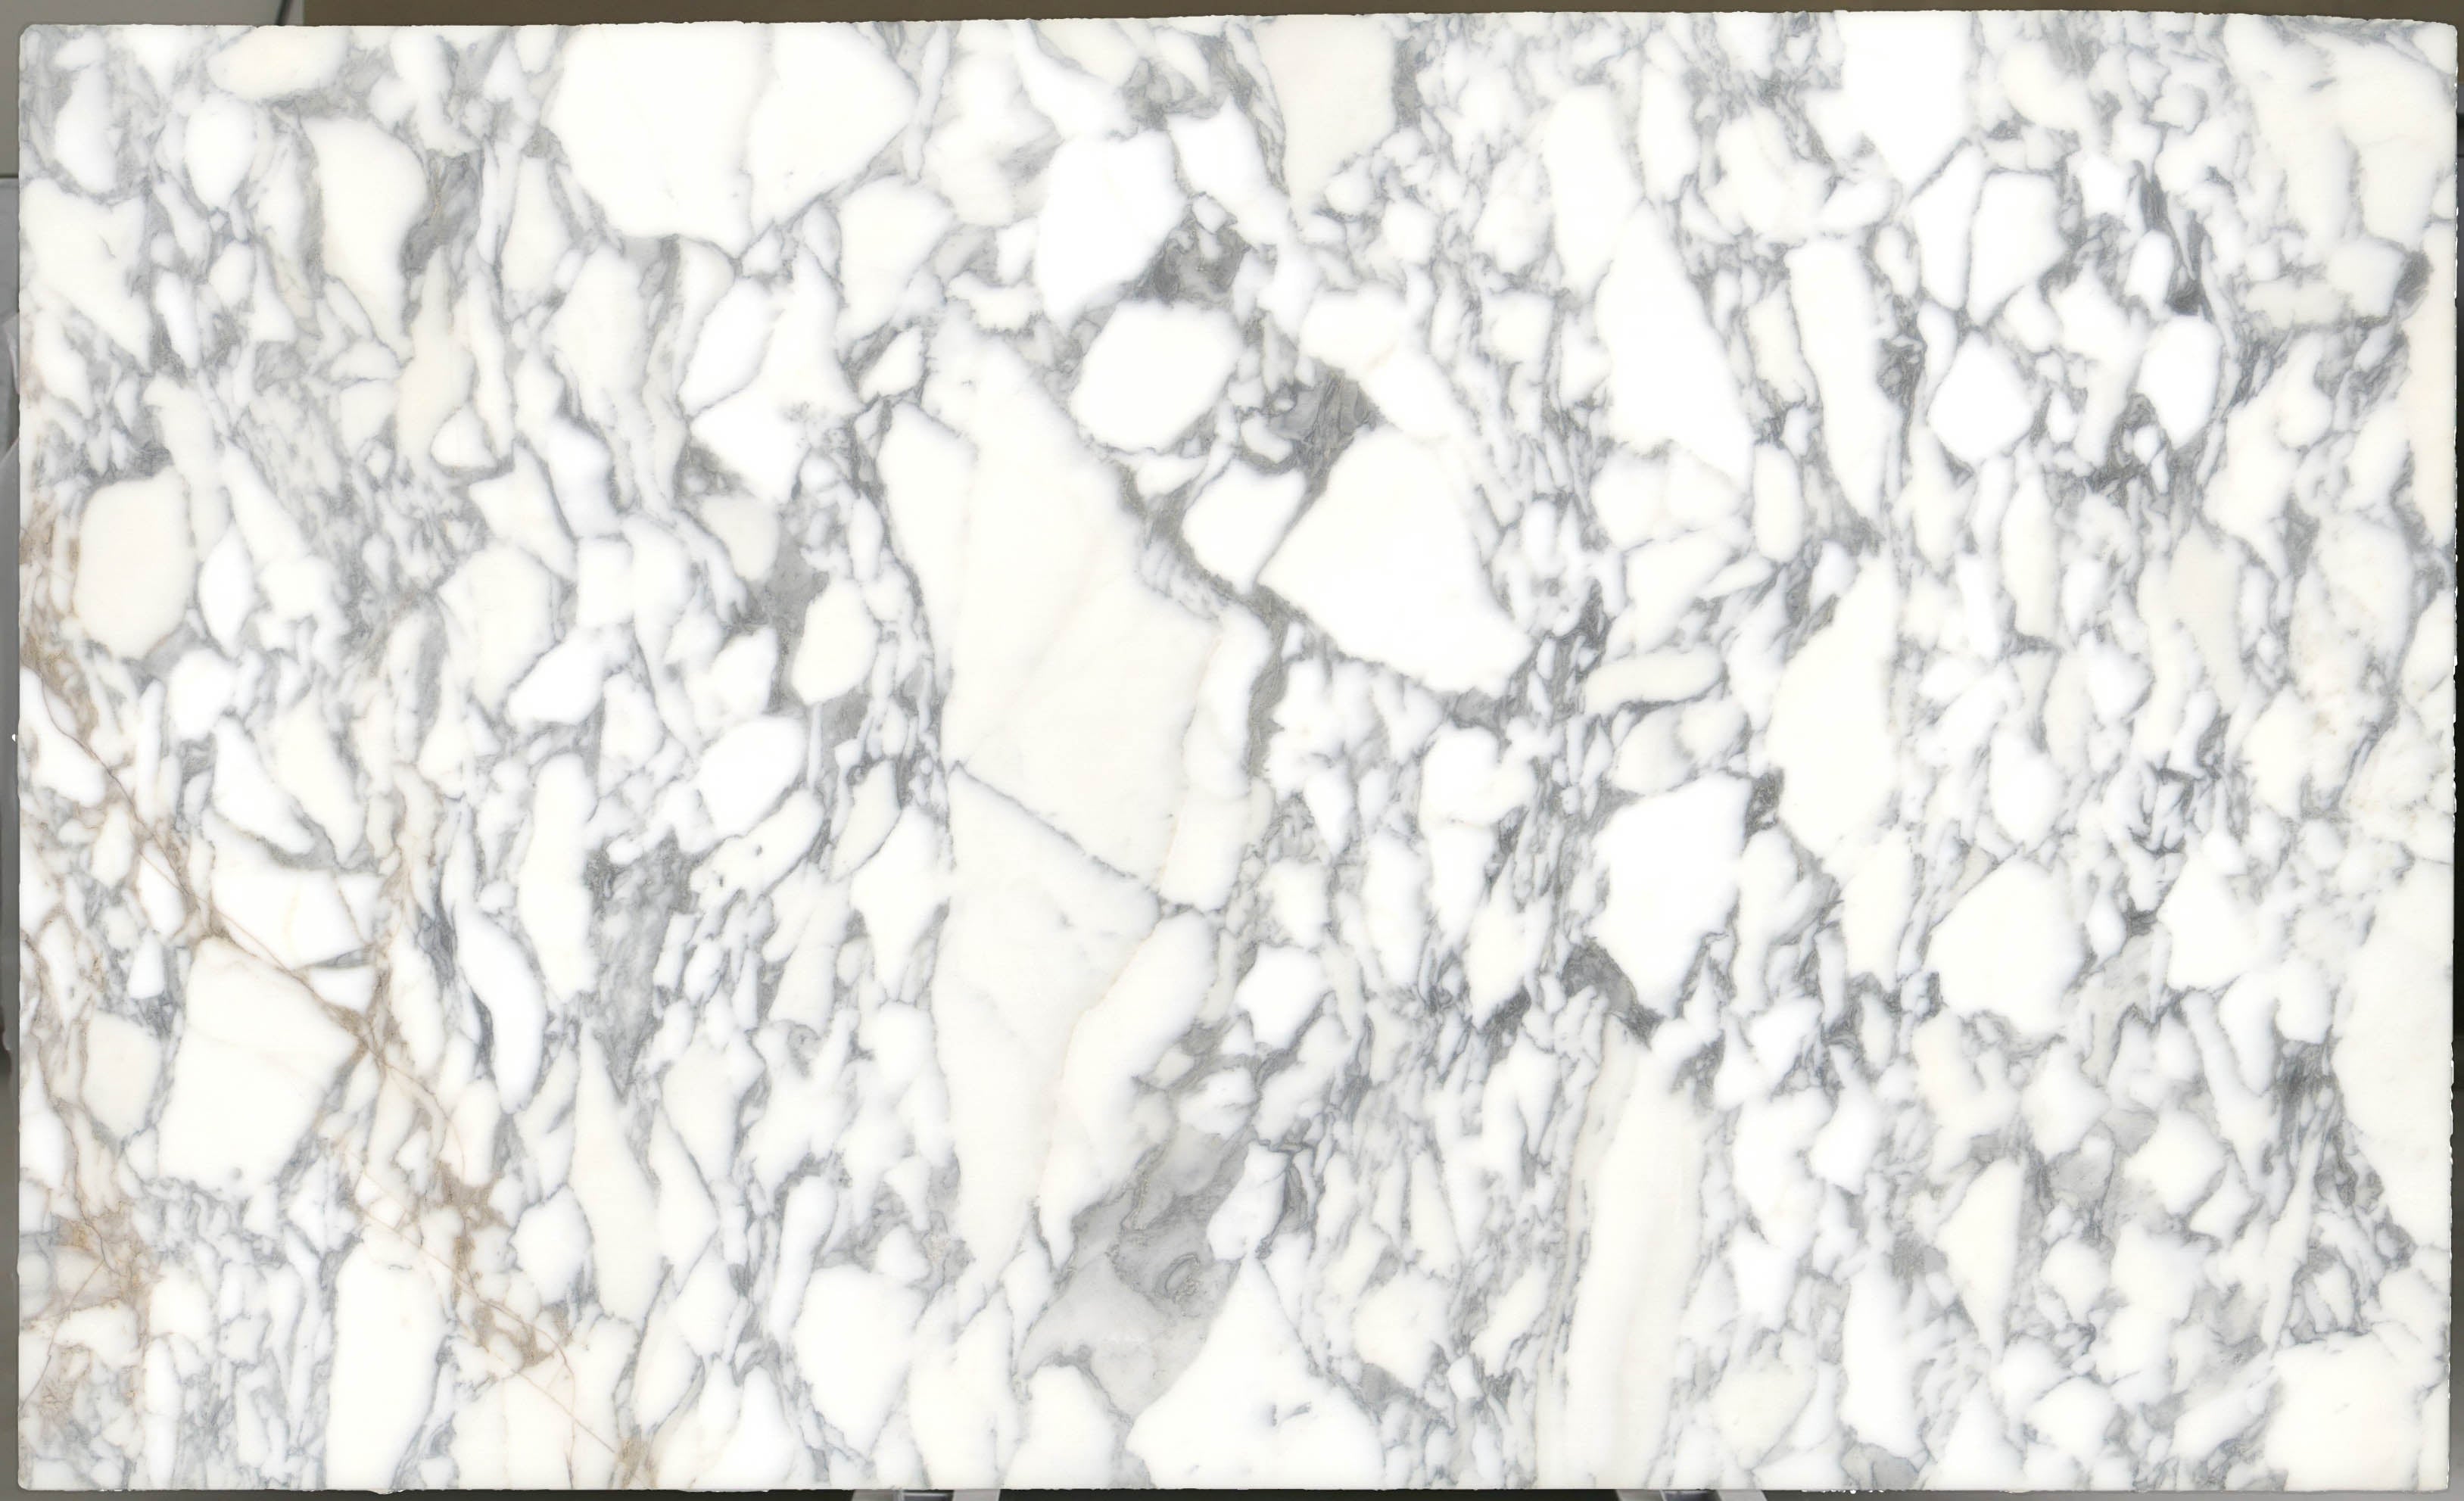  Arabescato Corchia Marble Slab 3/4 - 4026#22 -  VS 74x123 